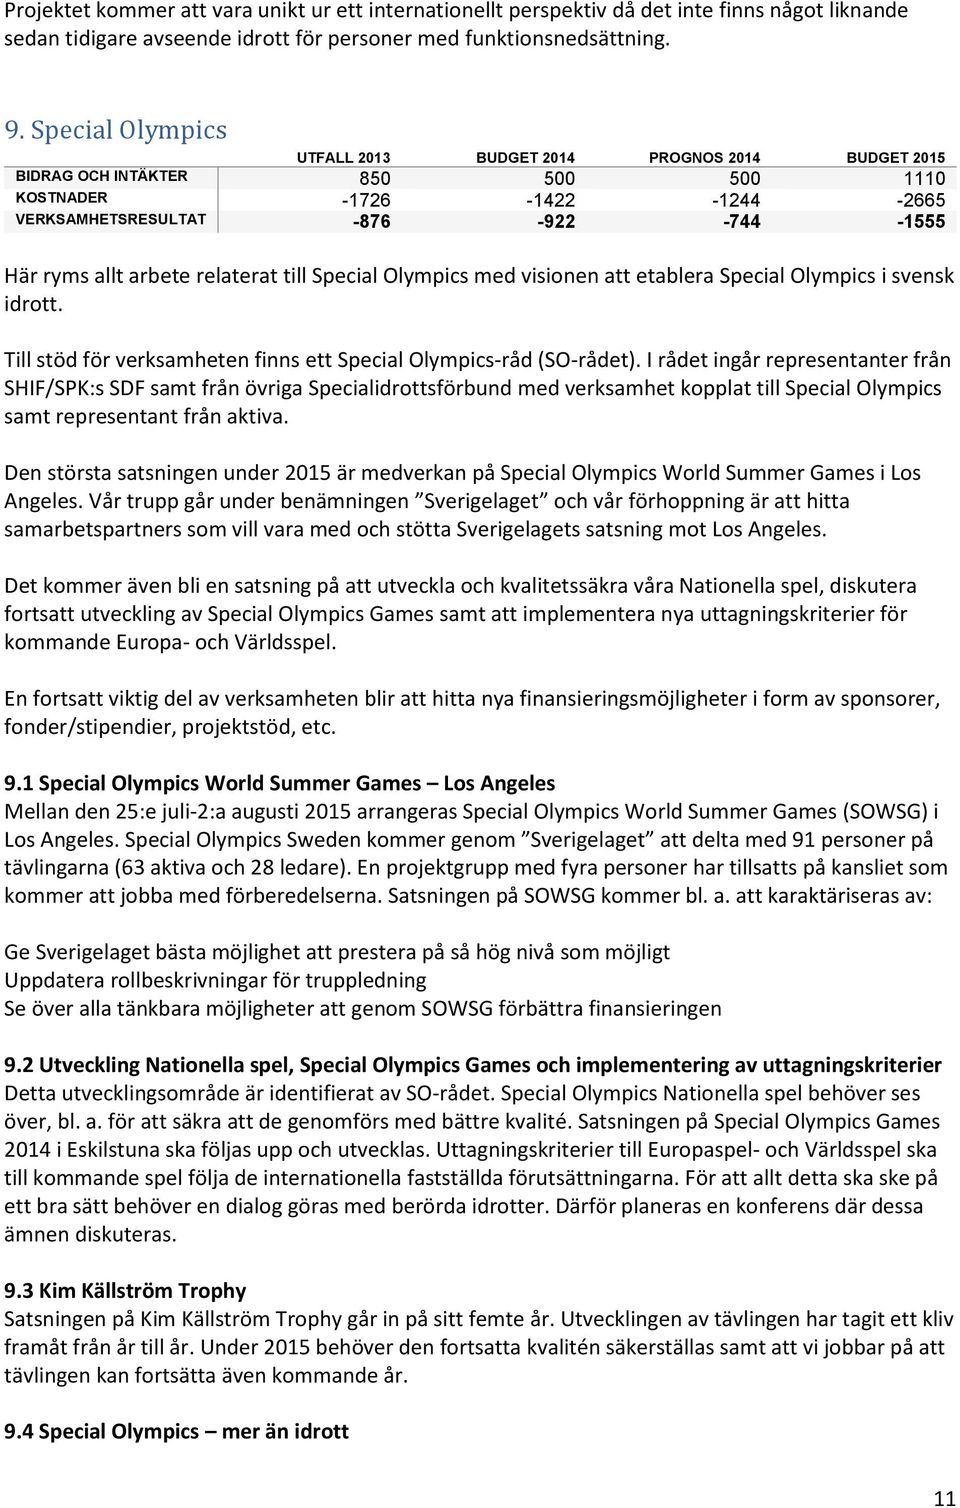 etablera Special Olympics i svensk idrott. Till stöd för verksamheten finns ett Special Olympics-råd (SO-rådet).